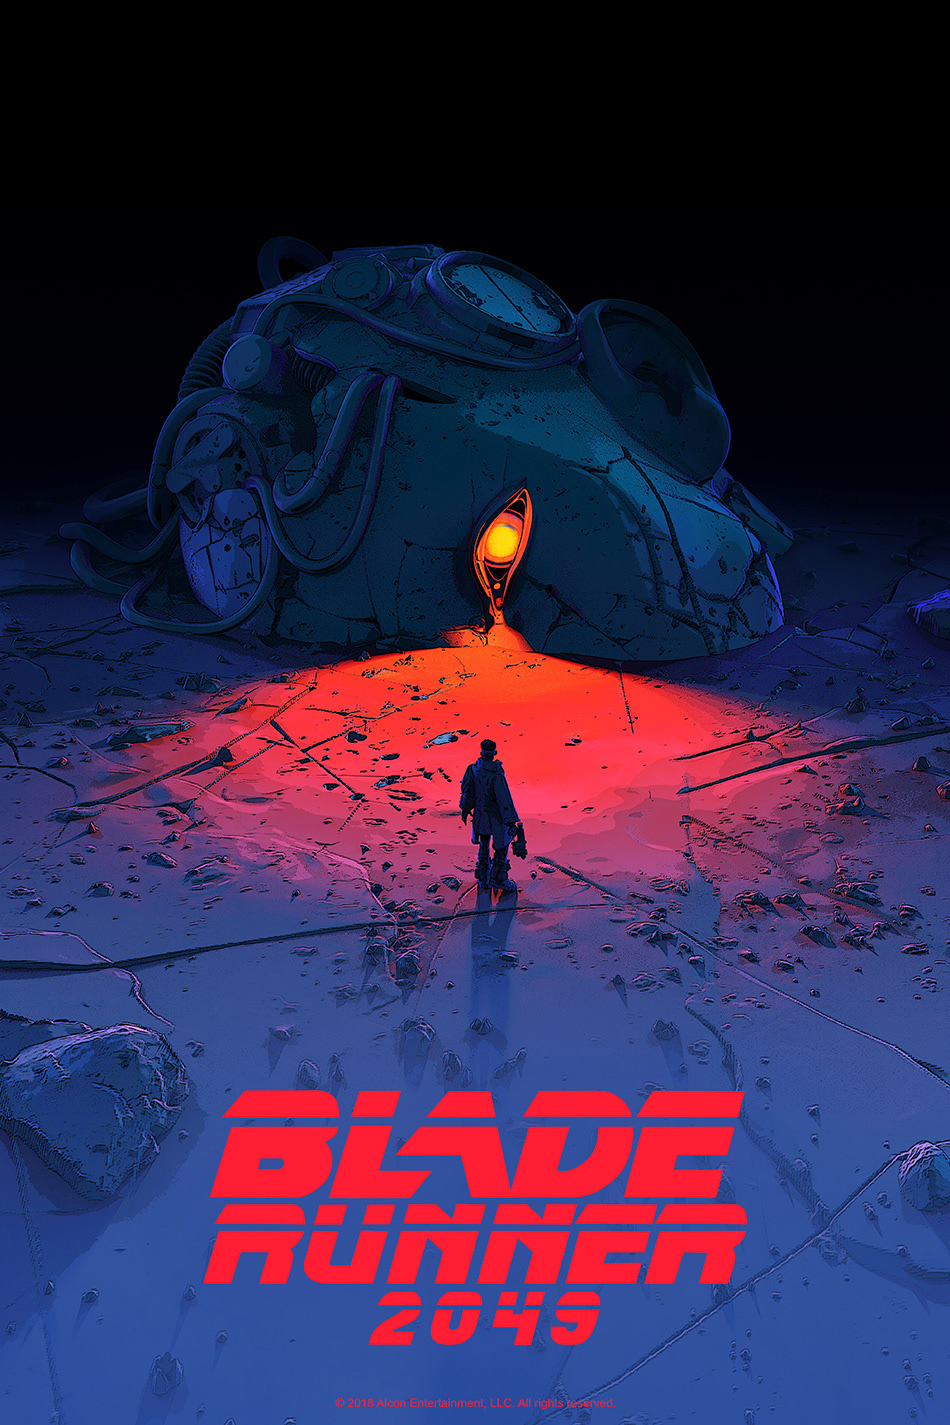 Bladerunner Cyberpunk poster art